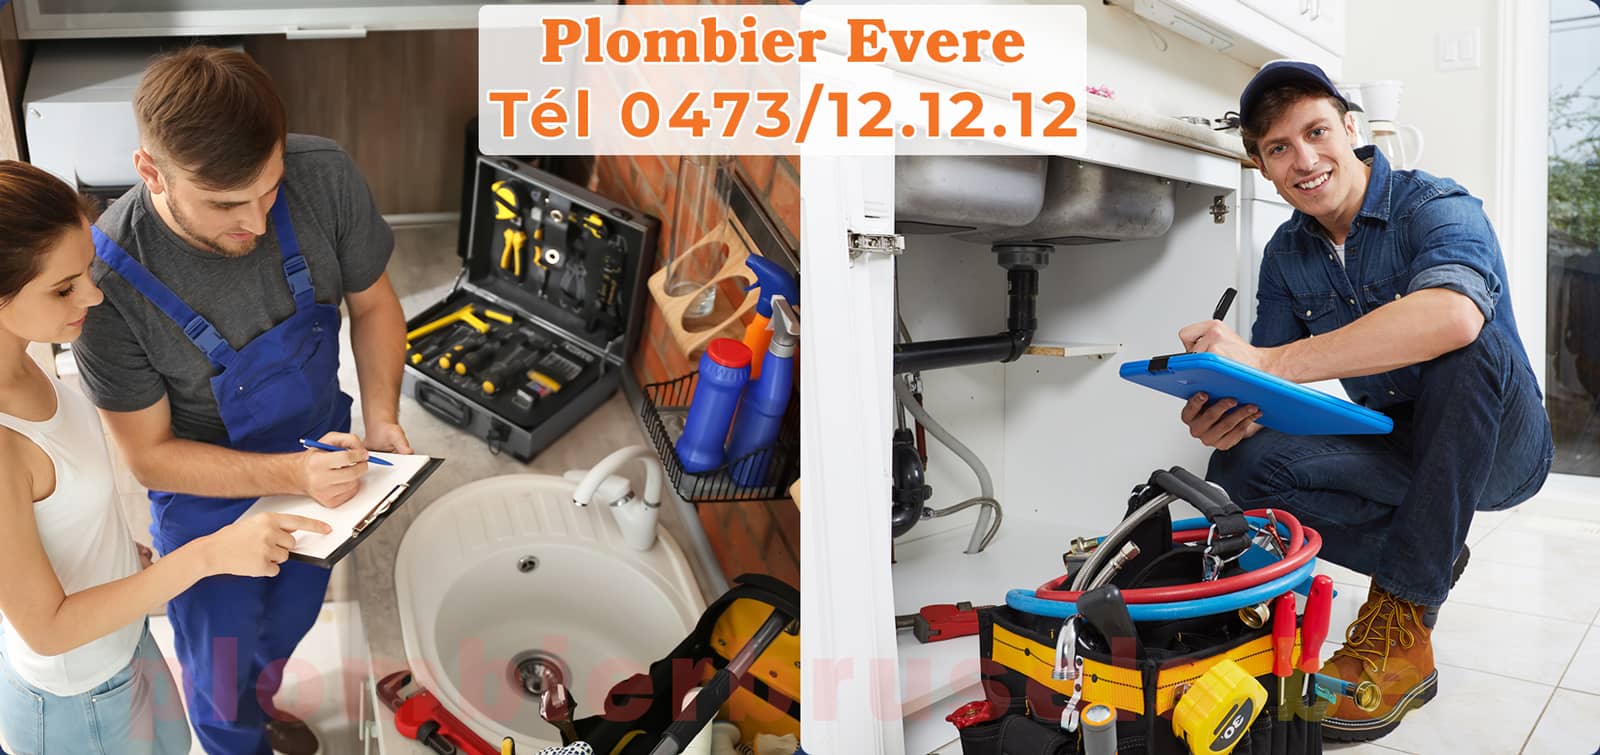 Plombier Evere service de Plomberie tél 0473/12.12.12